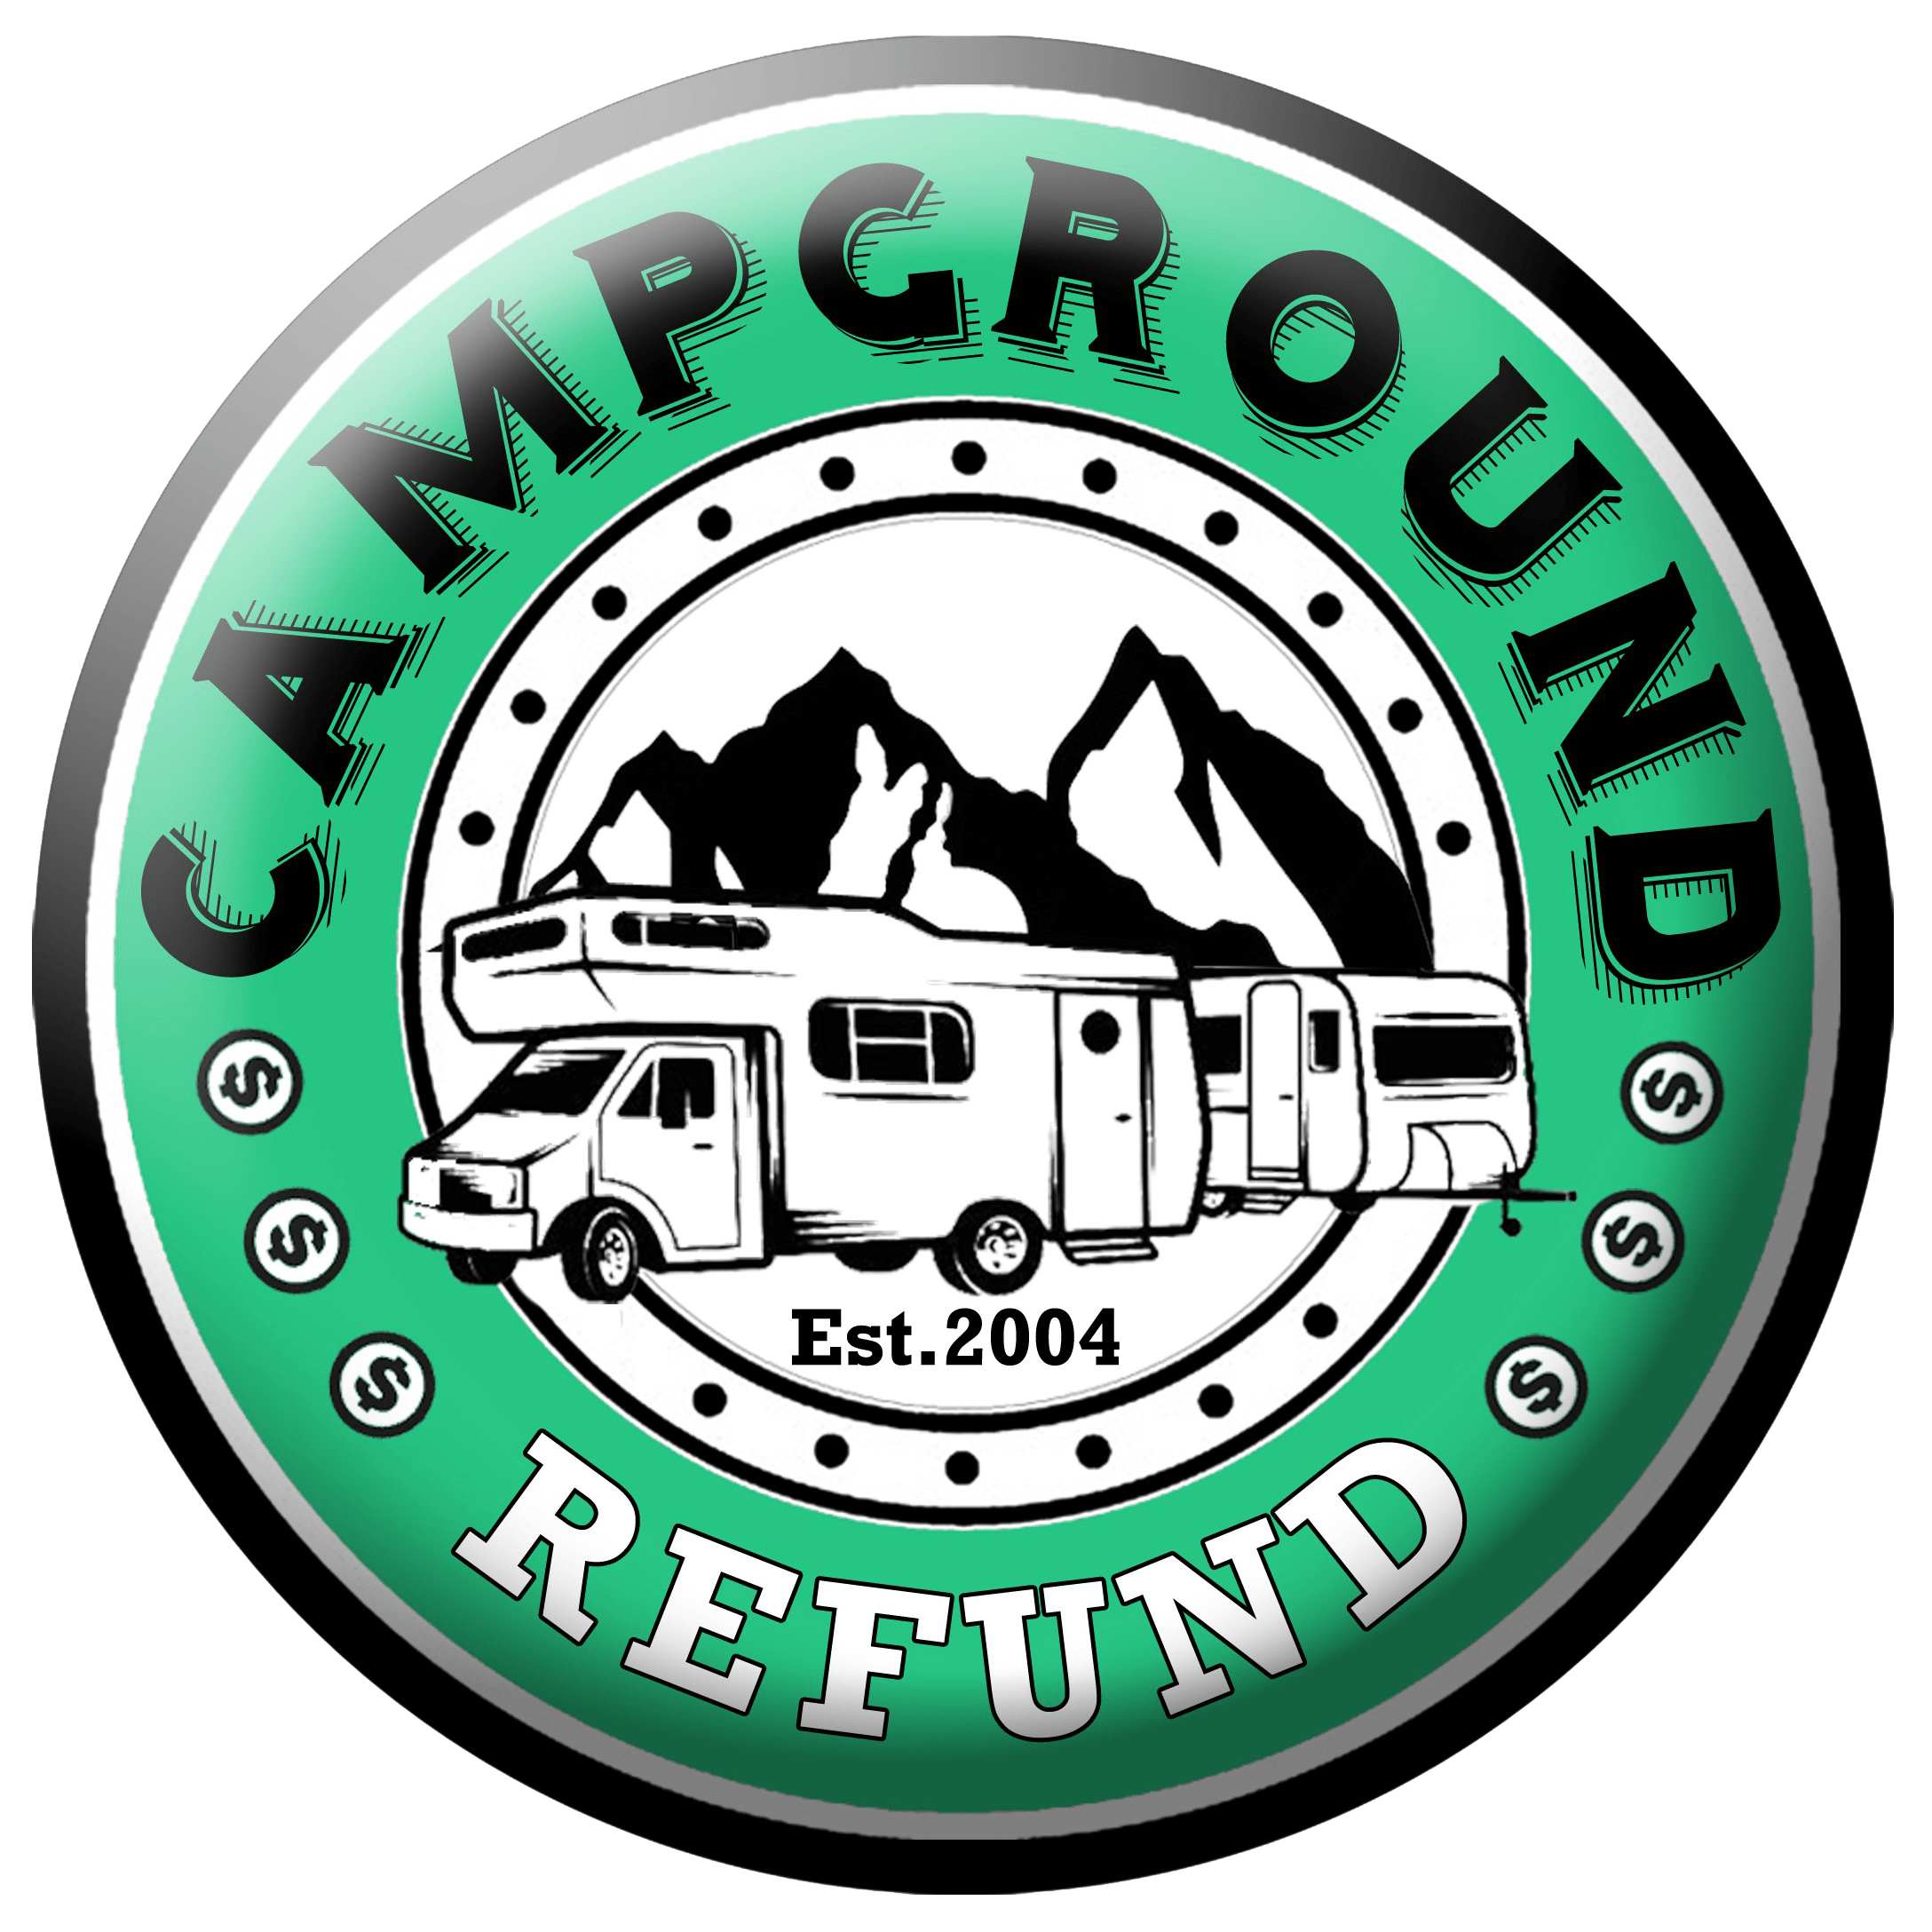 Campground Refund